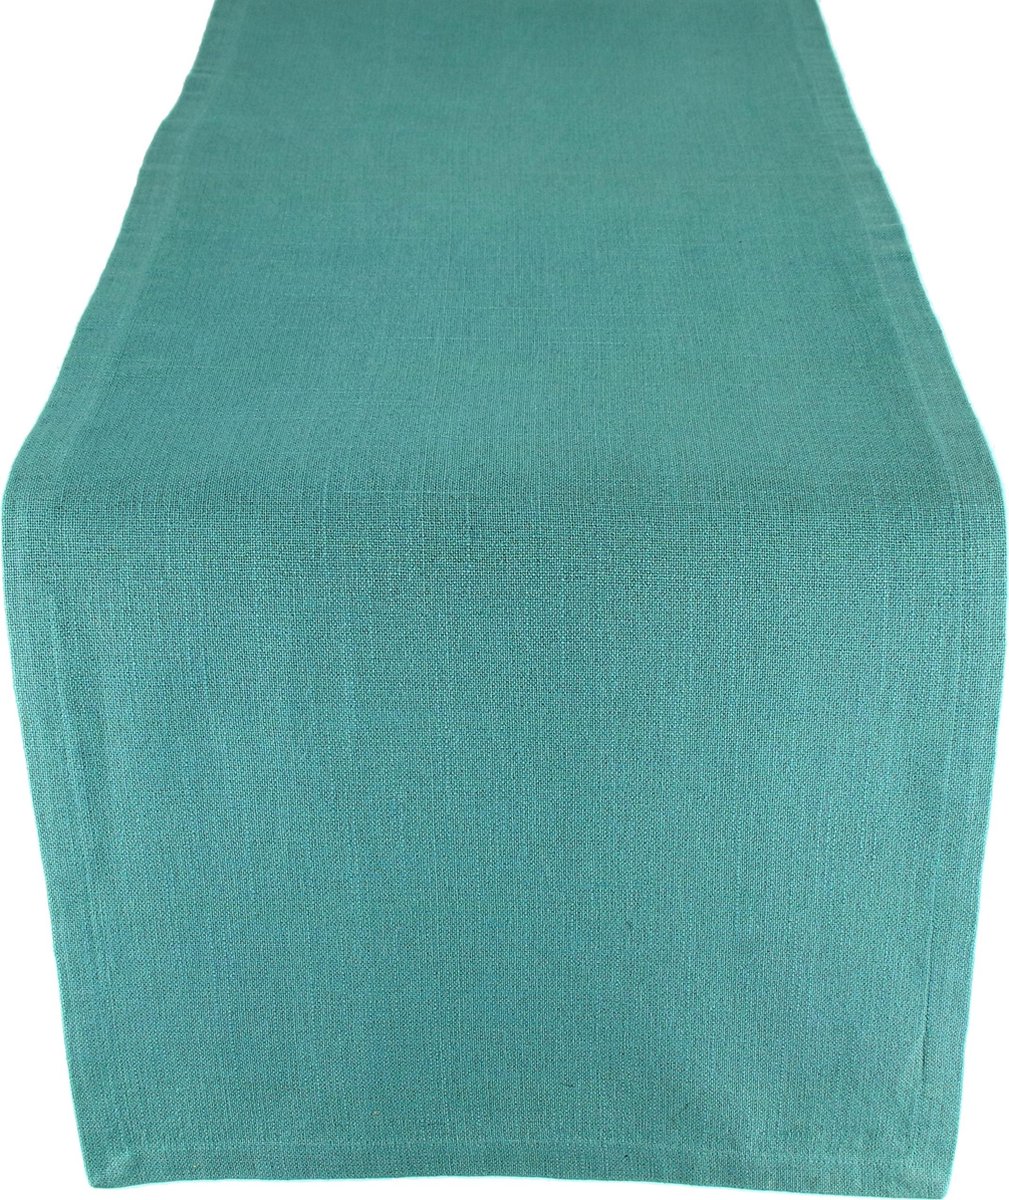 Tafelloper - 100% katoen - Turquoise - 40 X 140 cm